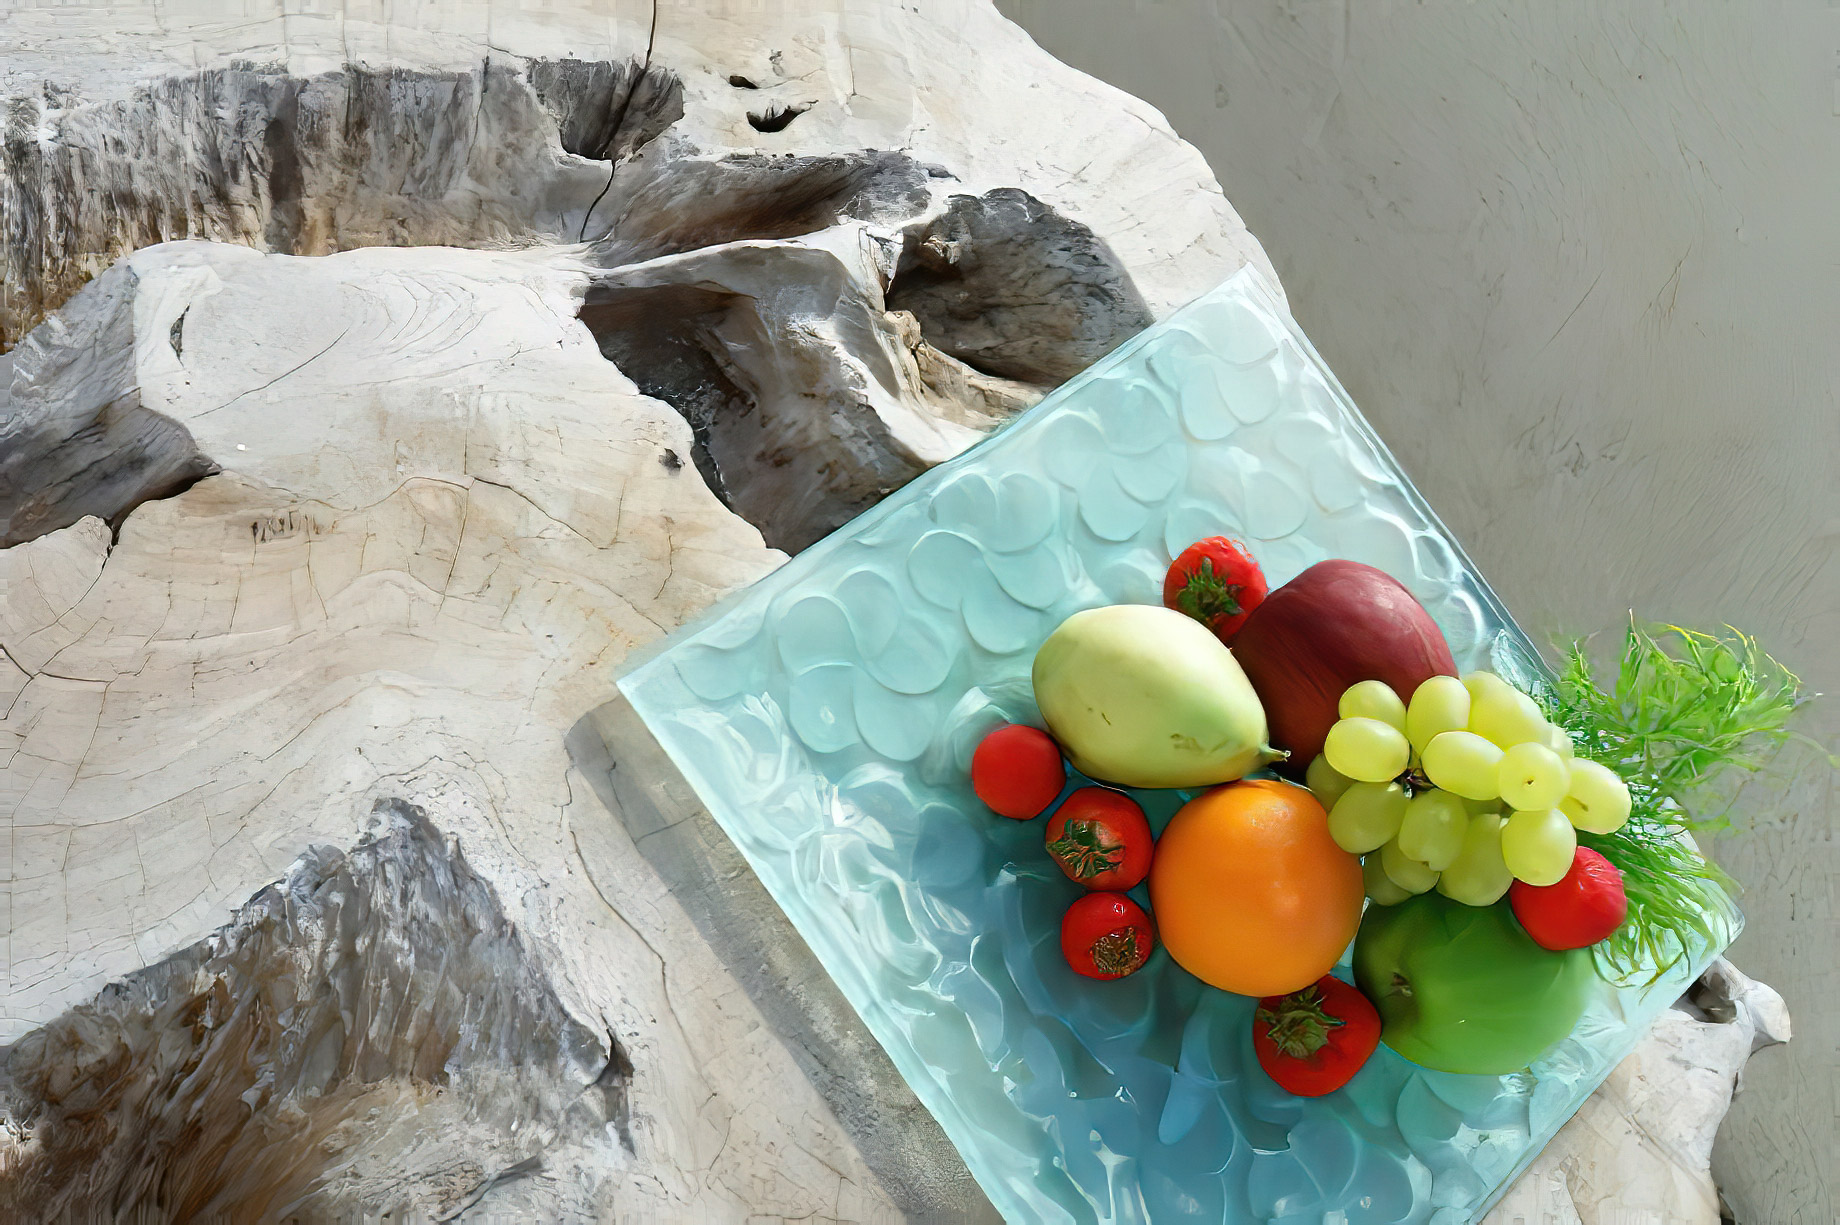 Mystique Hotel Santorini – Oia, Santorini Island, Greece - Luxury Service Fresh Fruit Plate